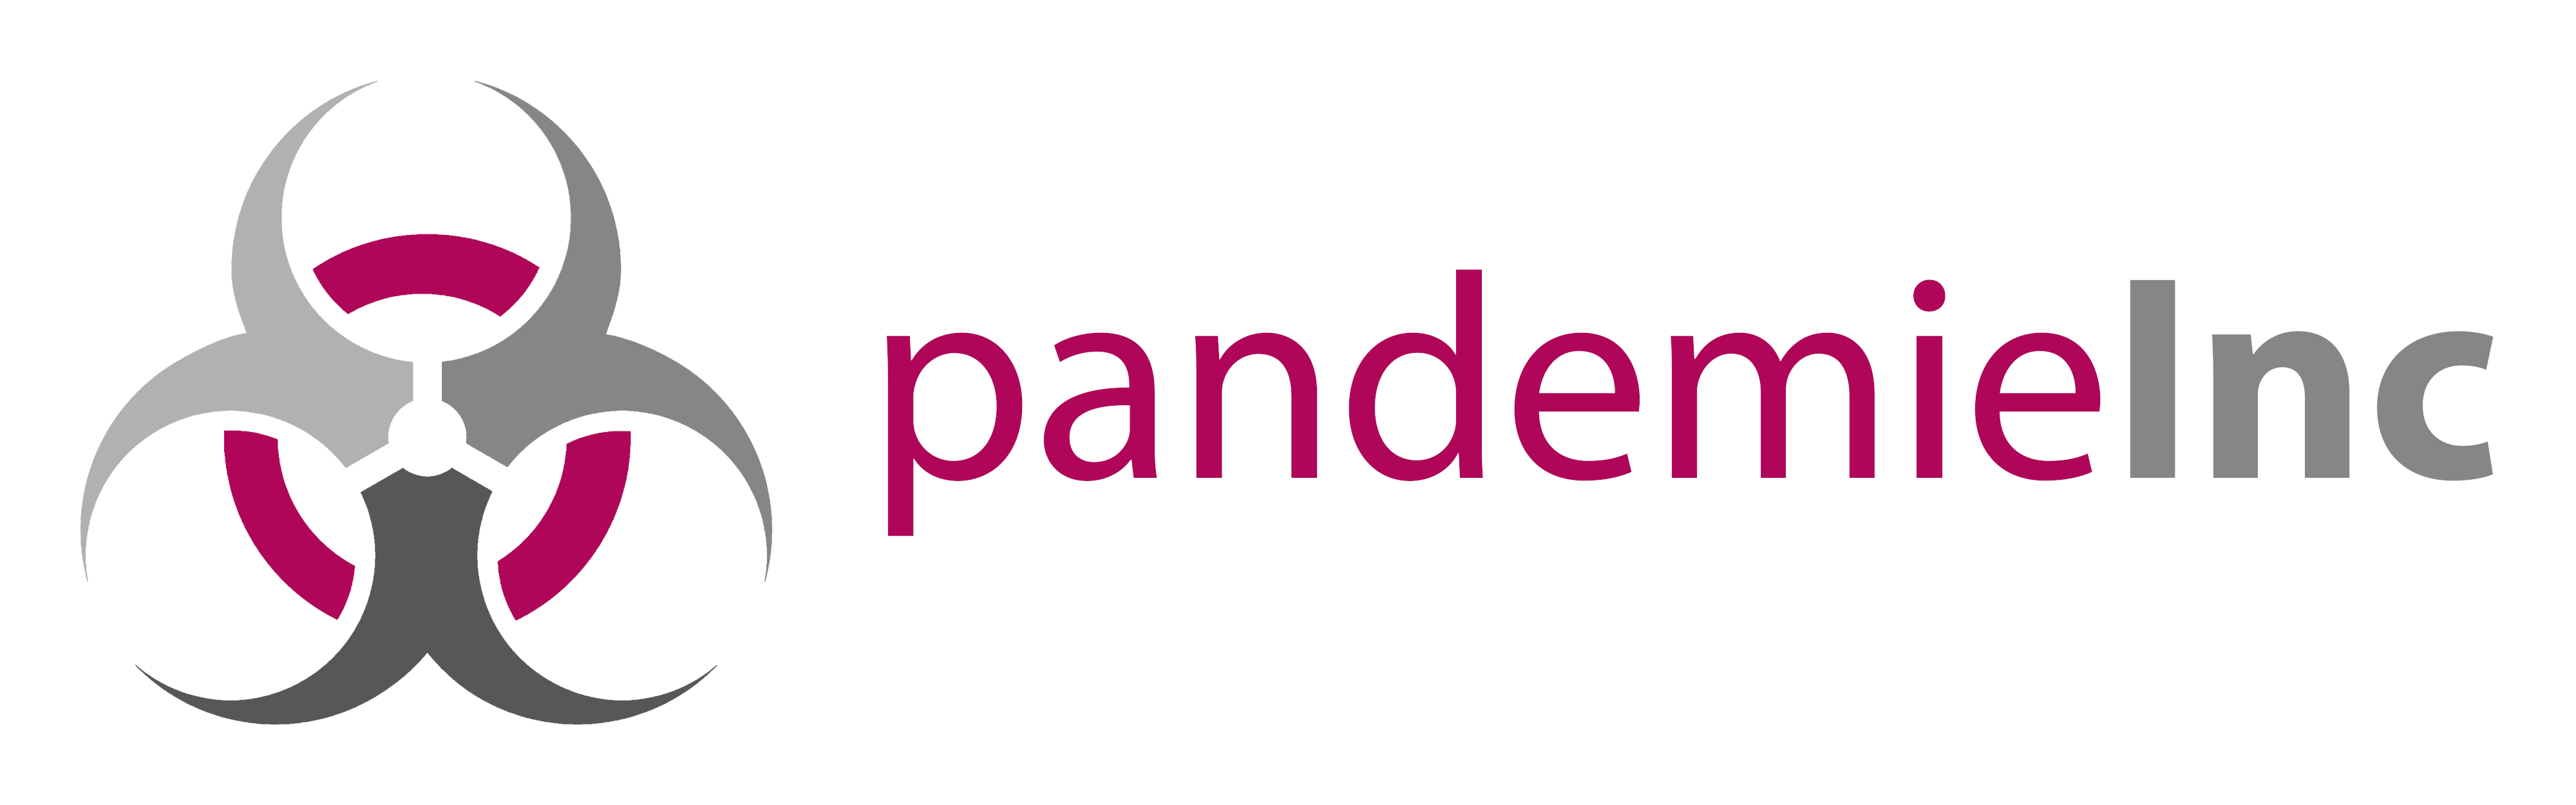 pandemieinc-logo.png